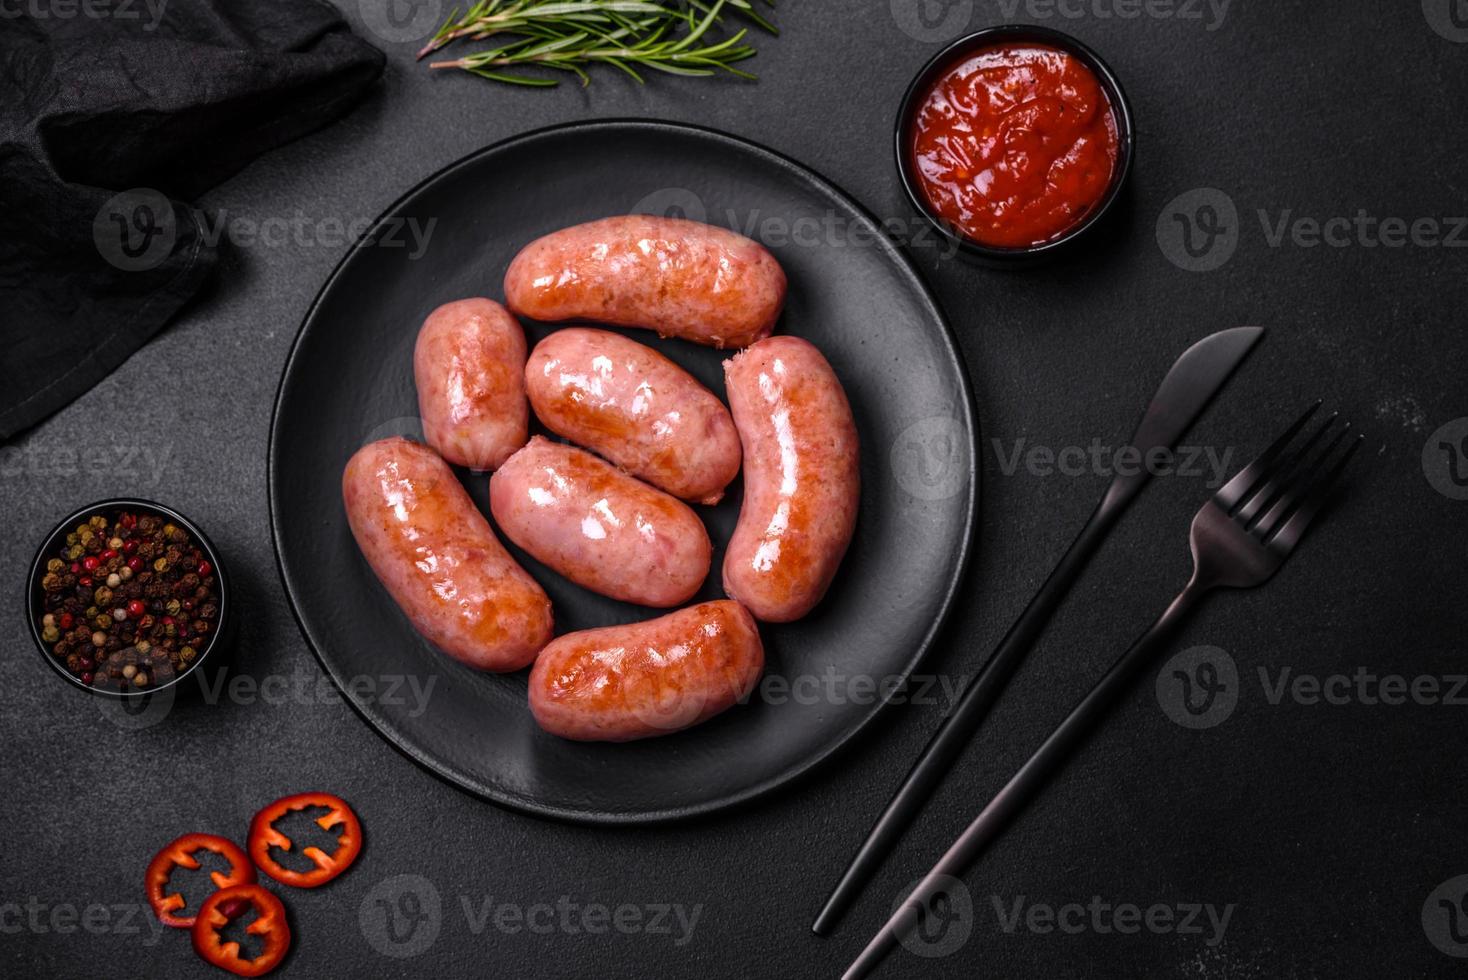 grillad korvar med kryddor och örter på en svart bakgrund foto